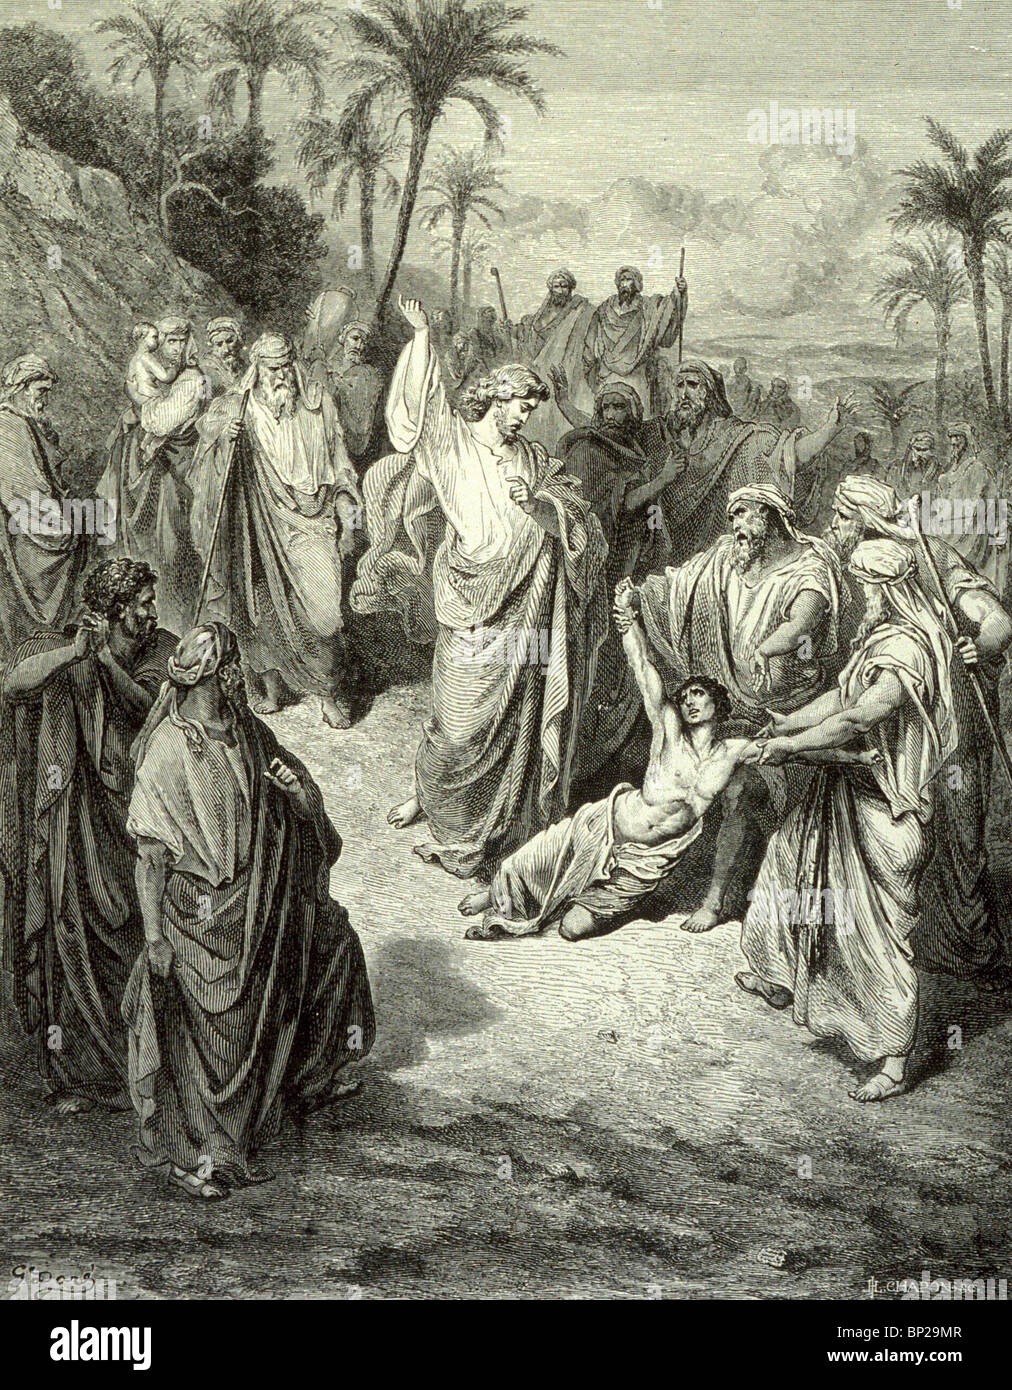 3180 HEILUNG DER LUNATIC JESUS (MATTHÄUS 17:15) ILLUSTRATION AUS DEM DORE "BIBEL" VERÖFFENTLICHT 1866, ENGLAND " Stockfoto